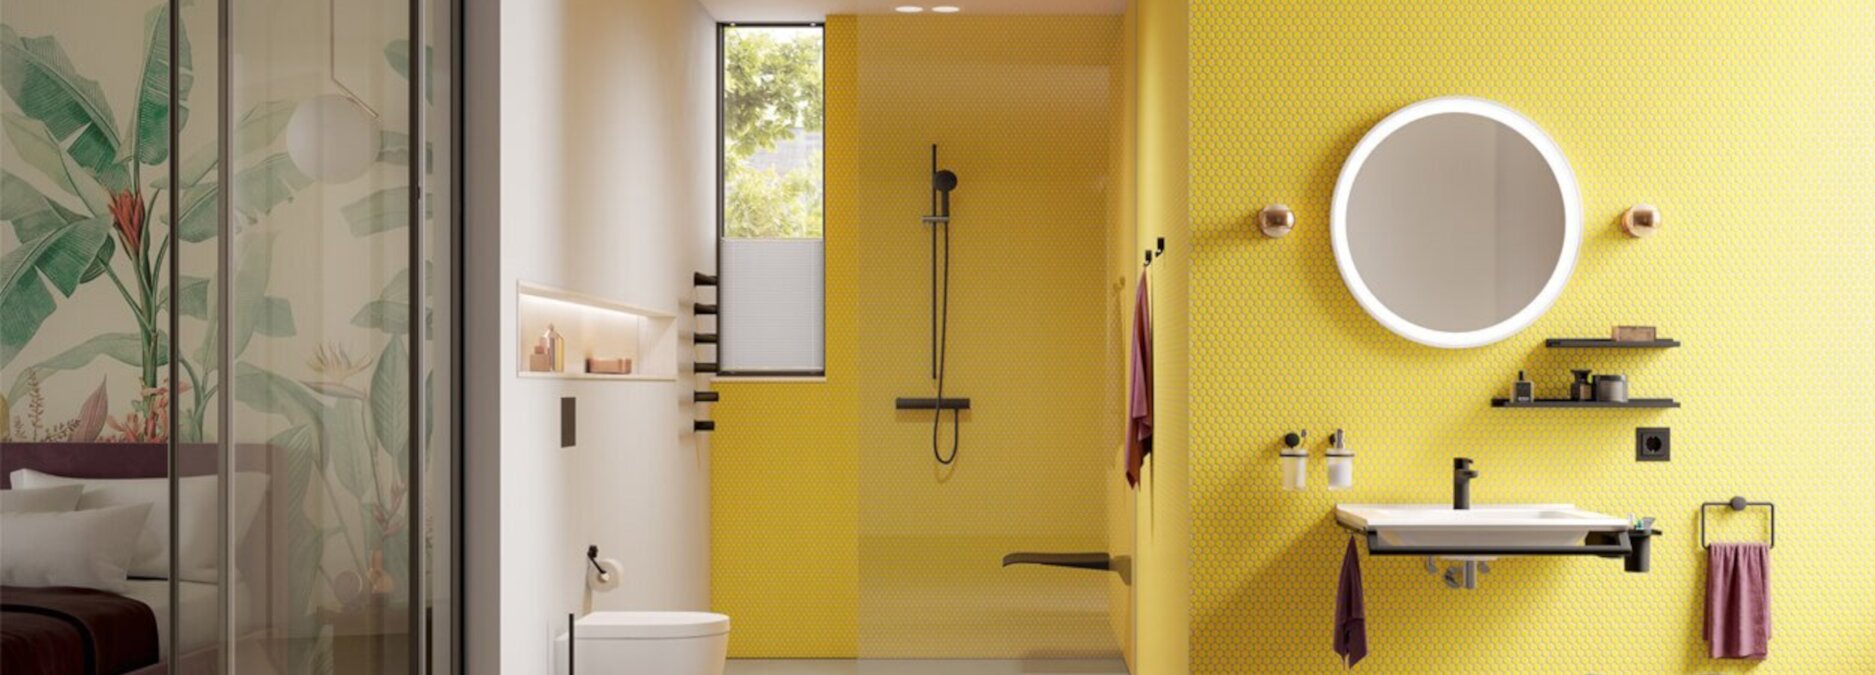 Einrichtungsratgeber: Das sind die besten Farben für Ihr Badezimmer - Farbe für ein modernes Bad | Blog ssd-armaturenshop.de 